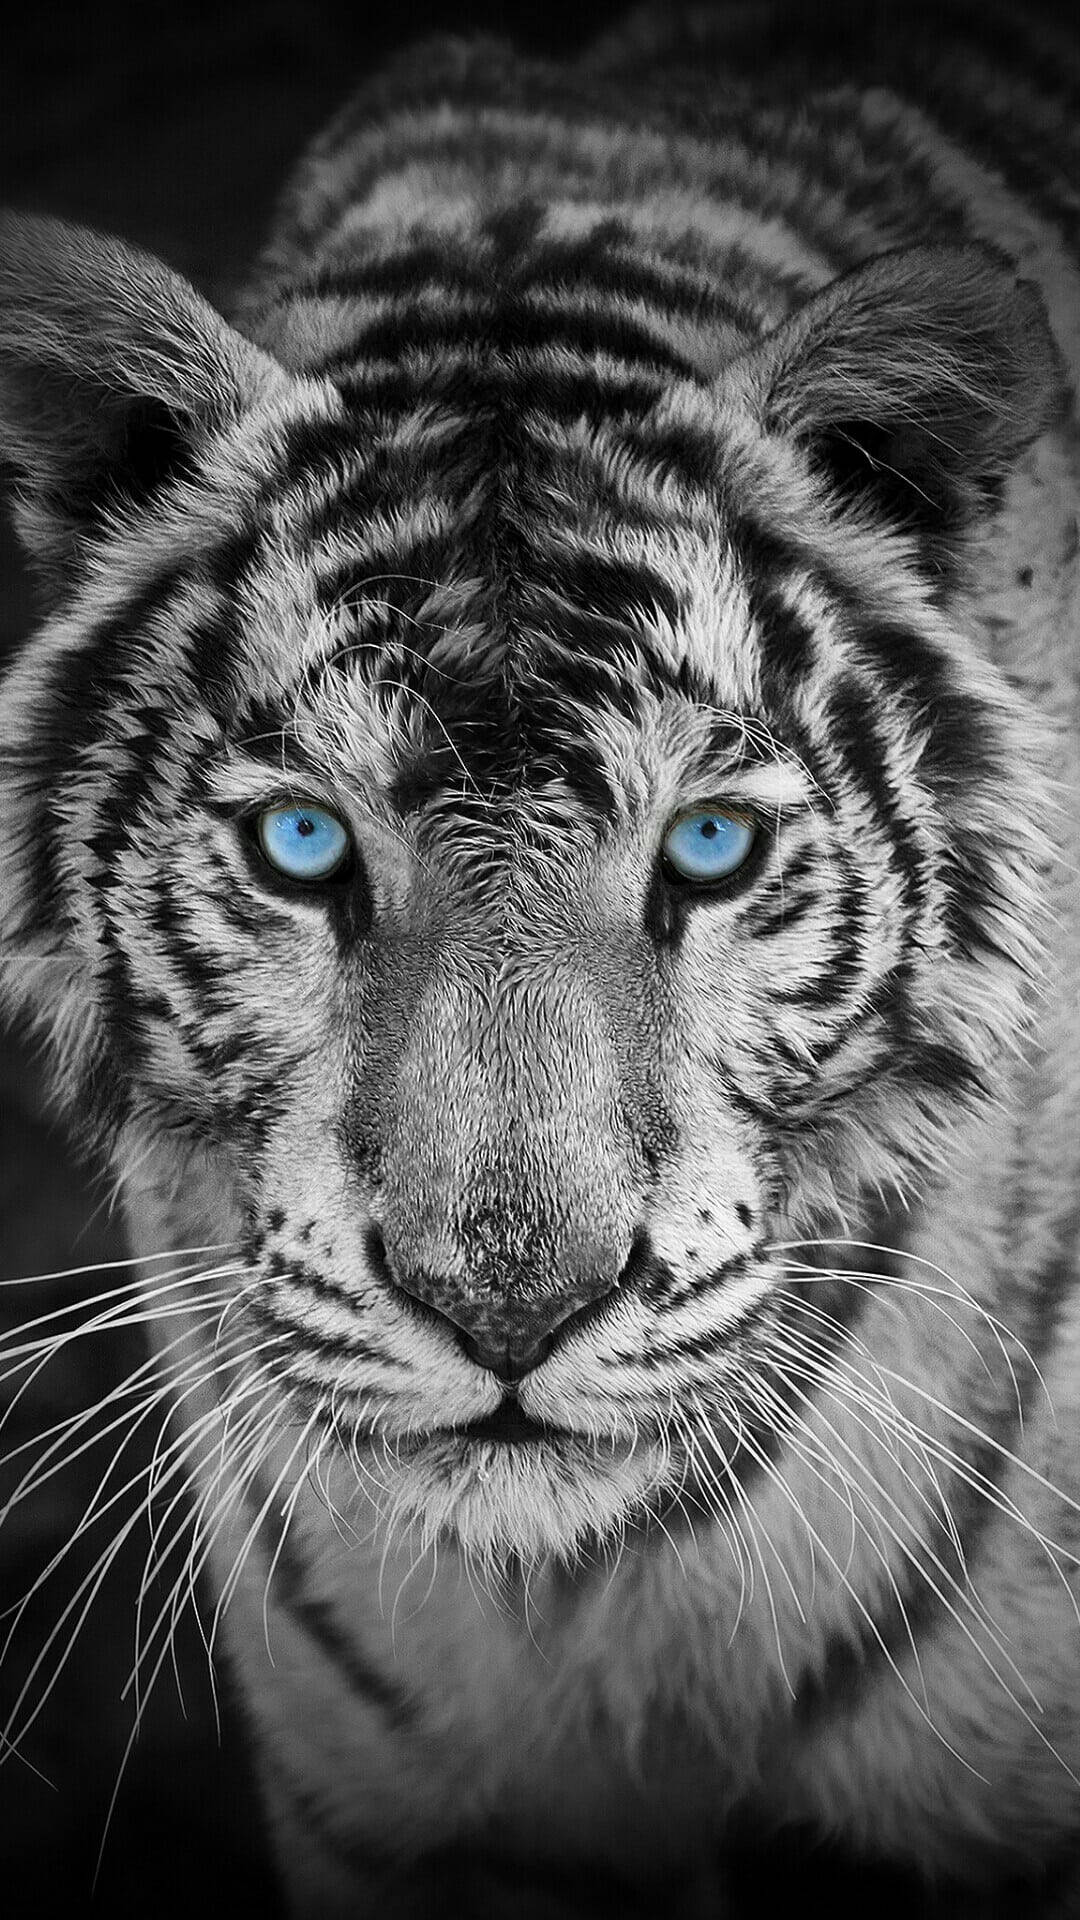 Garayscale Harimau With Blue Eyes